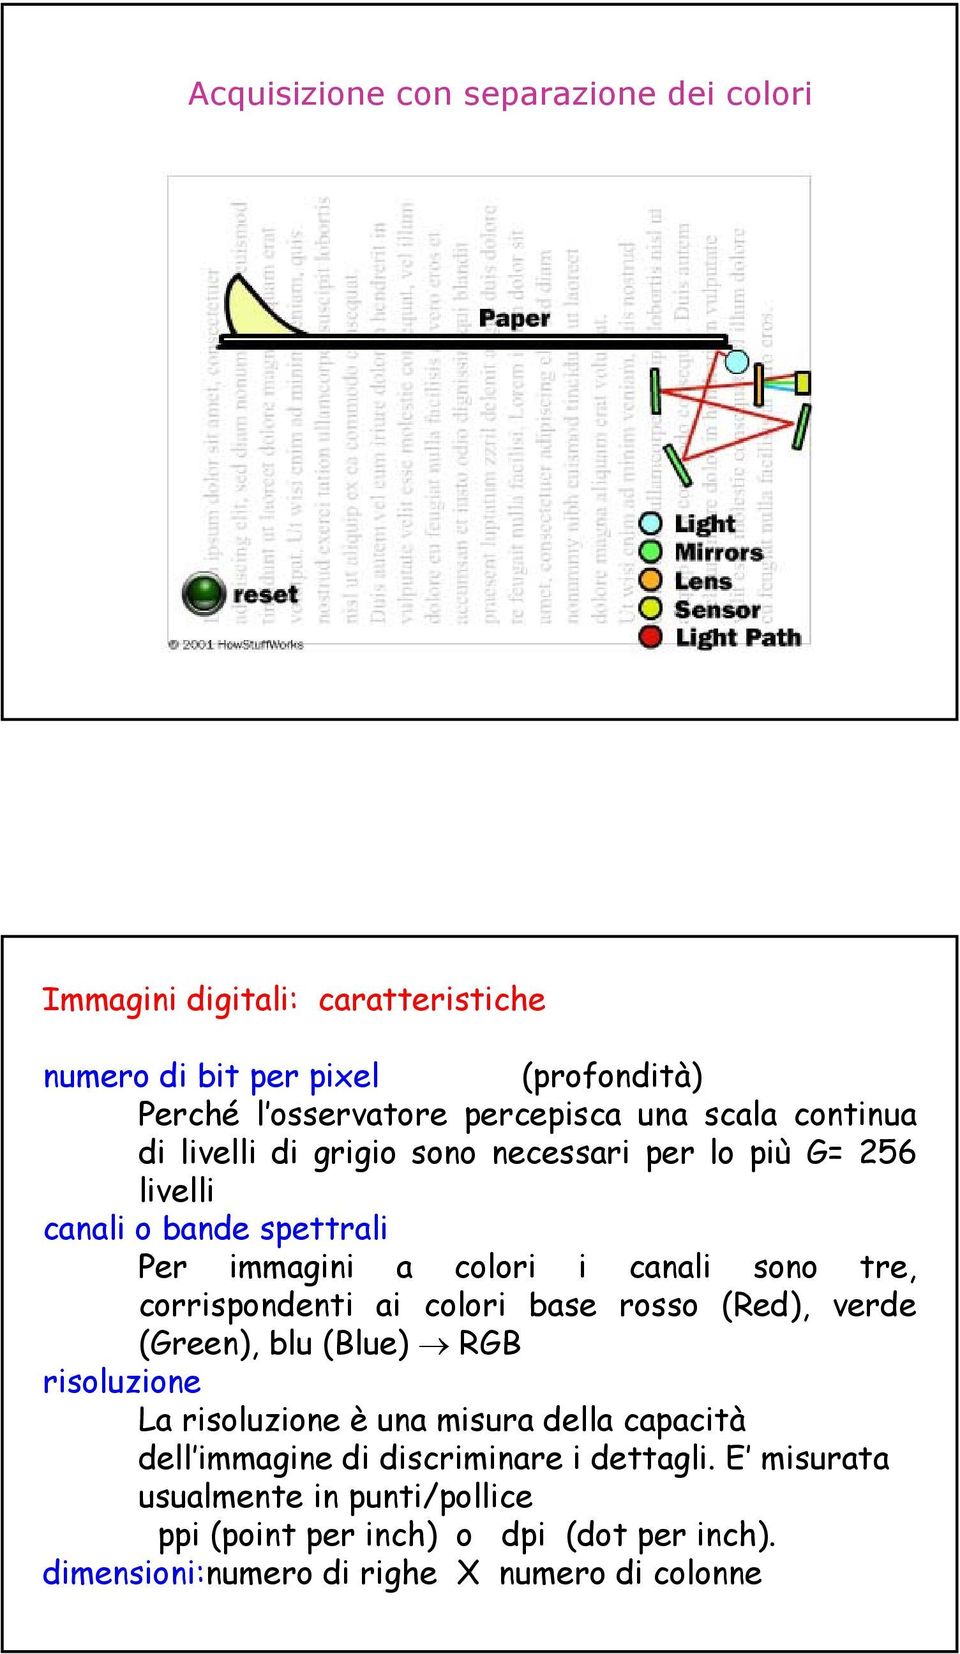 corrispondenti ai colori base rosso (Red), verde (Green), blu (Blue) RGB risoluzione La risoluzione è una misura della capacità dell immagine di